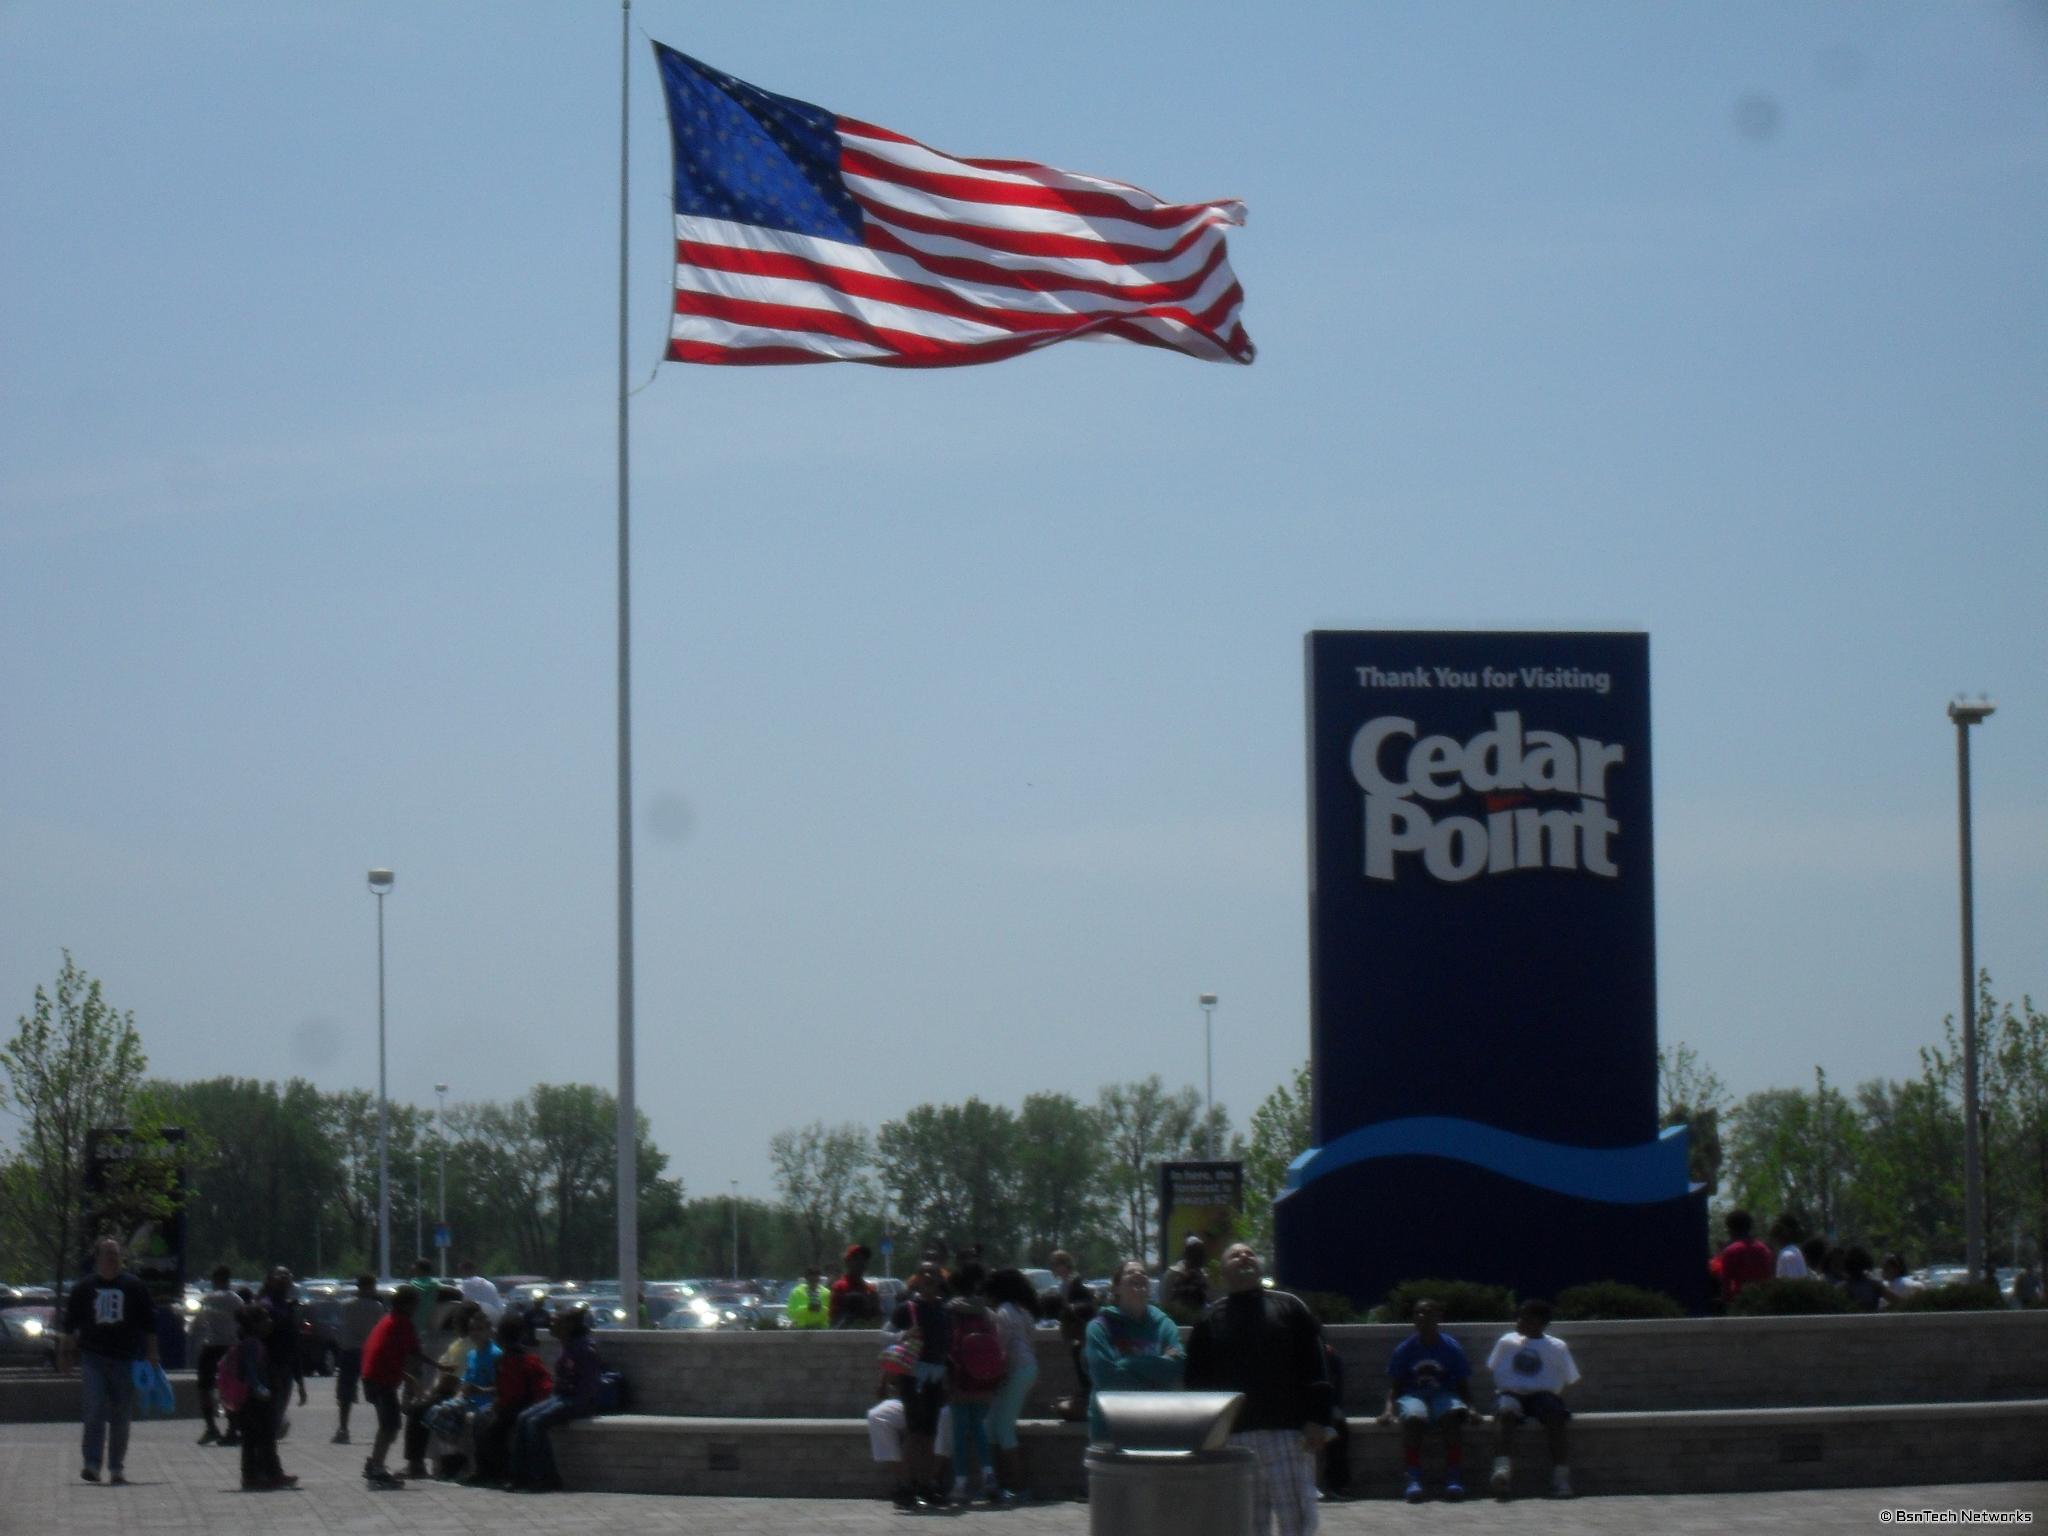 Cedar Point Entrance